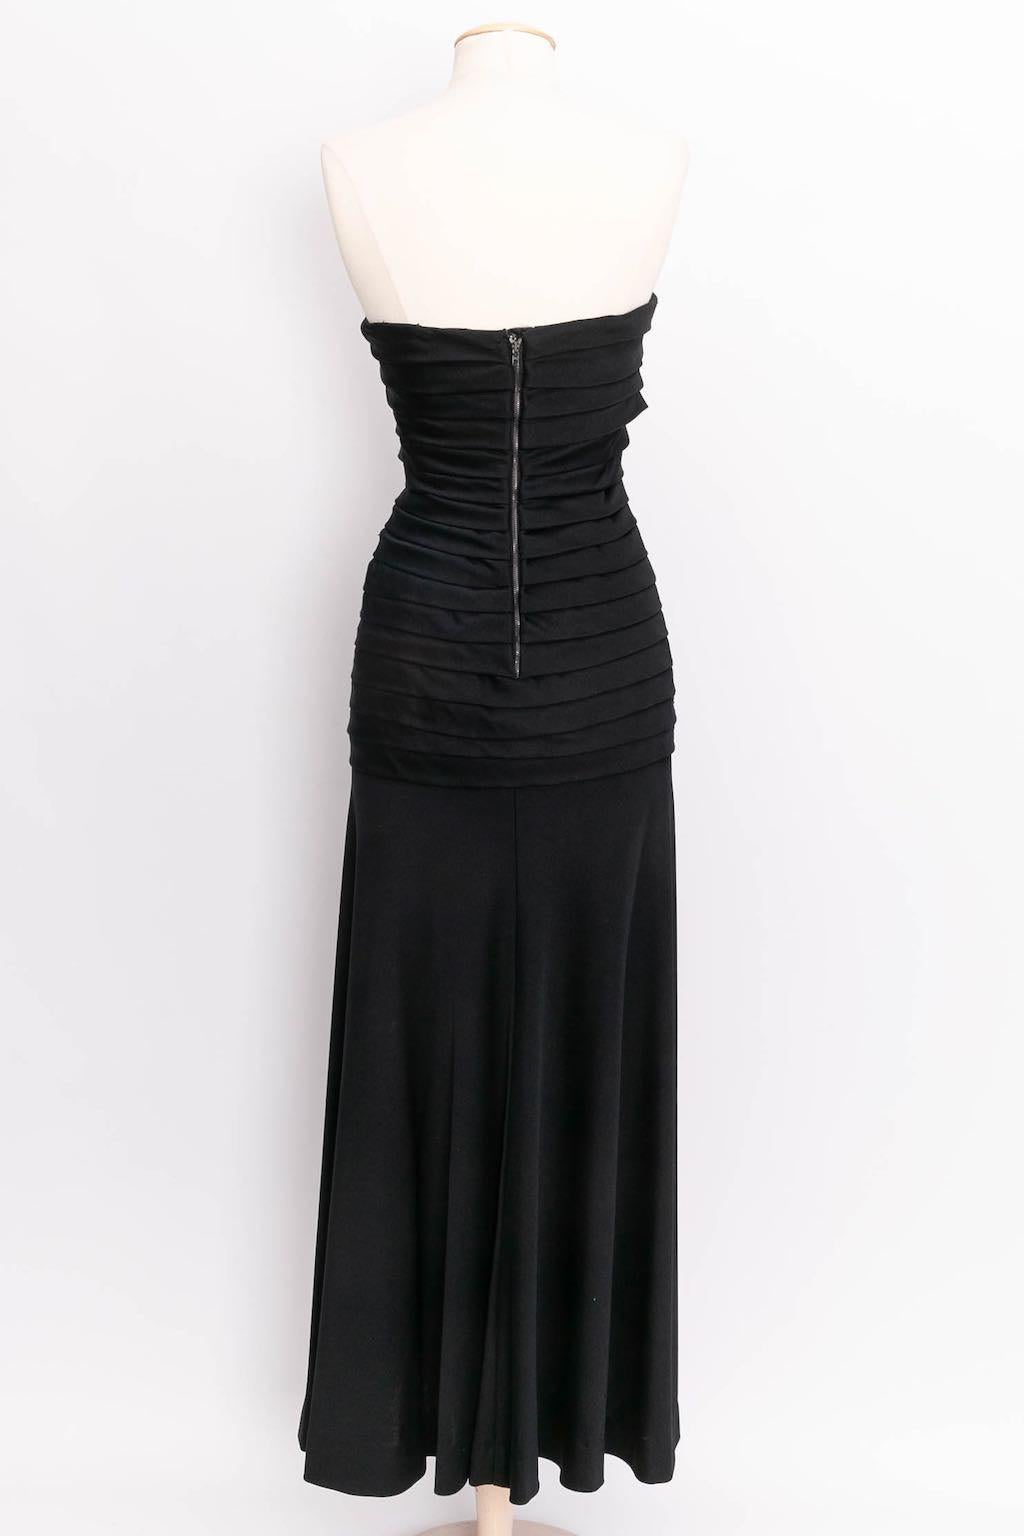 Black Loris Azzaro bustier Long Silk Jersey Dress, Size 36FR For Sale